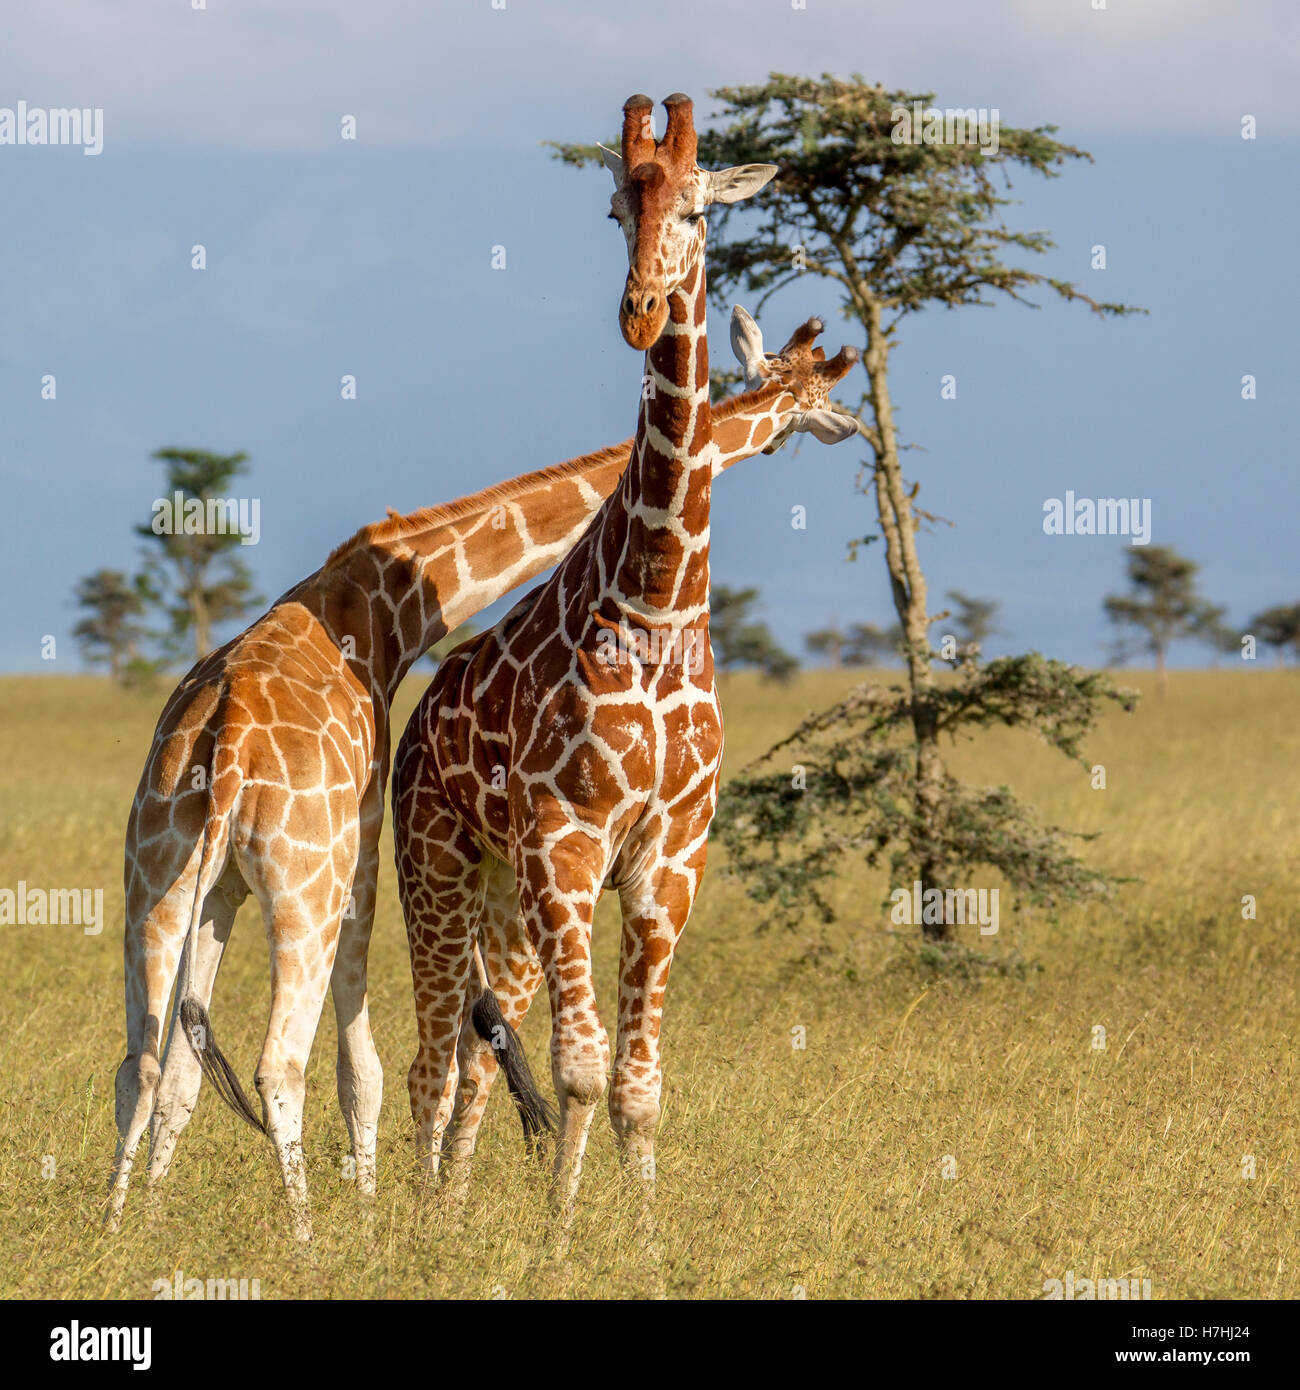 Deux giraffe réticulée Giraffa reticulata "girafe" Somalie combats cou une commençant à attaquer, Laikipia Kenya Afrique de l'Est Banque D'Images